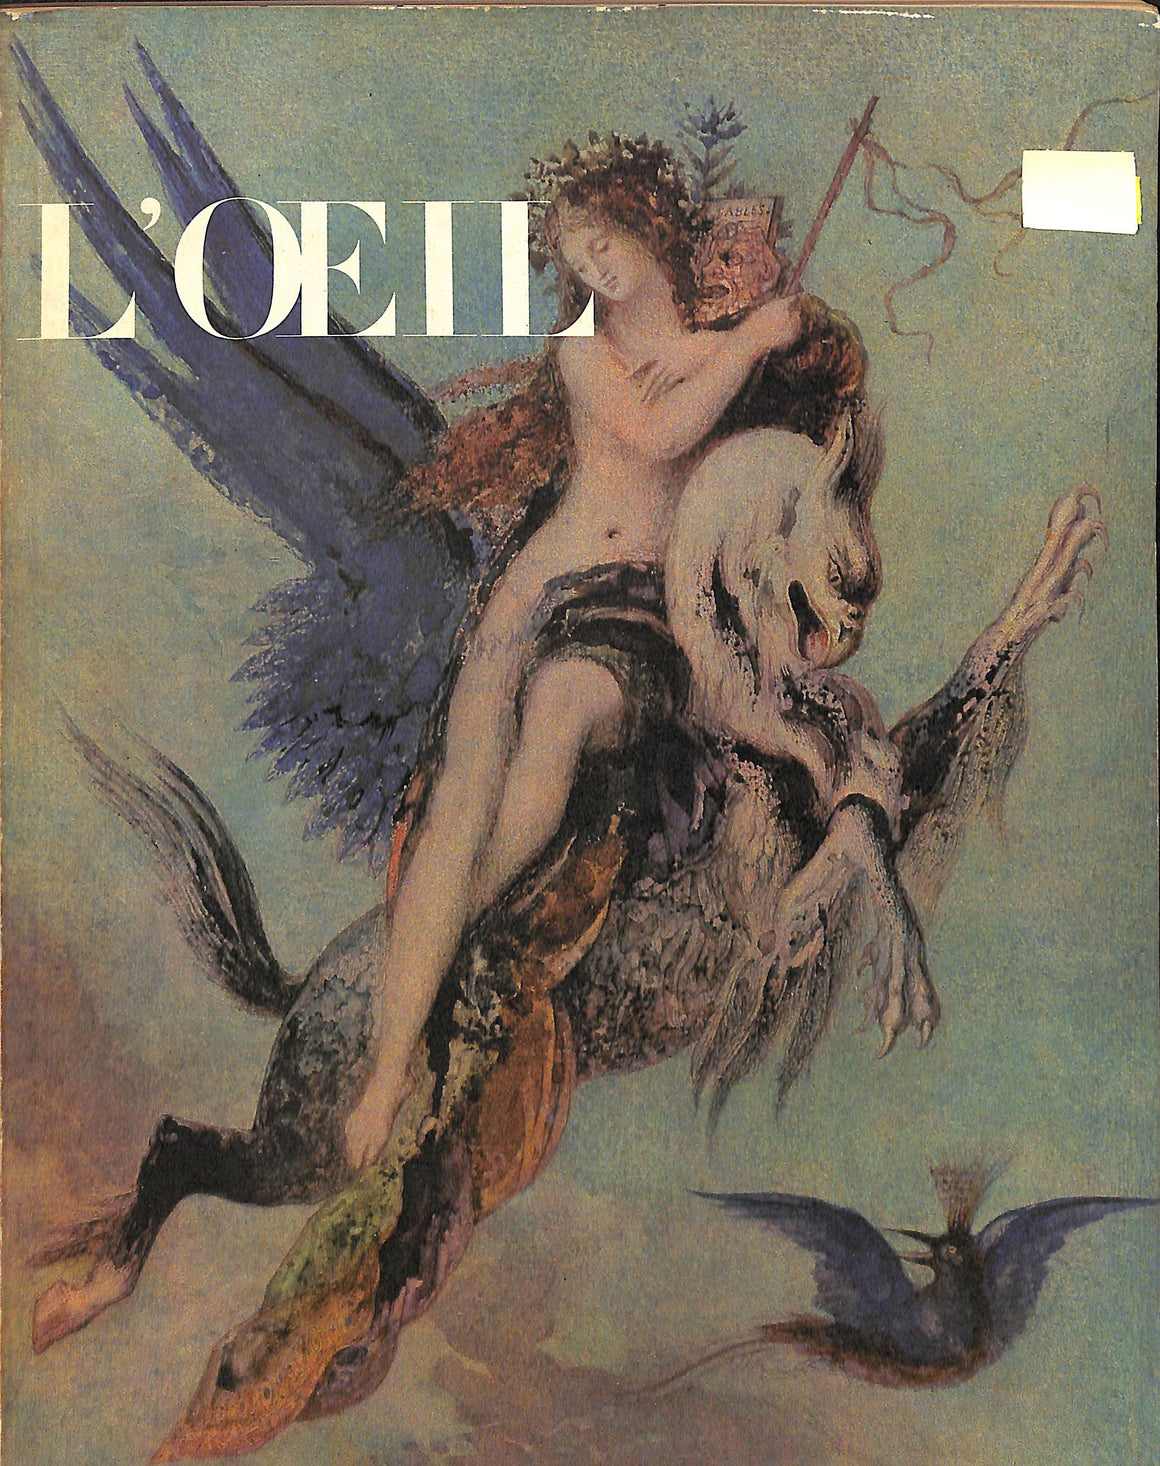 "L'ŒIL Juillet-Aout 1964" (SOLD)